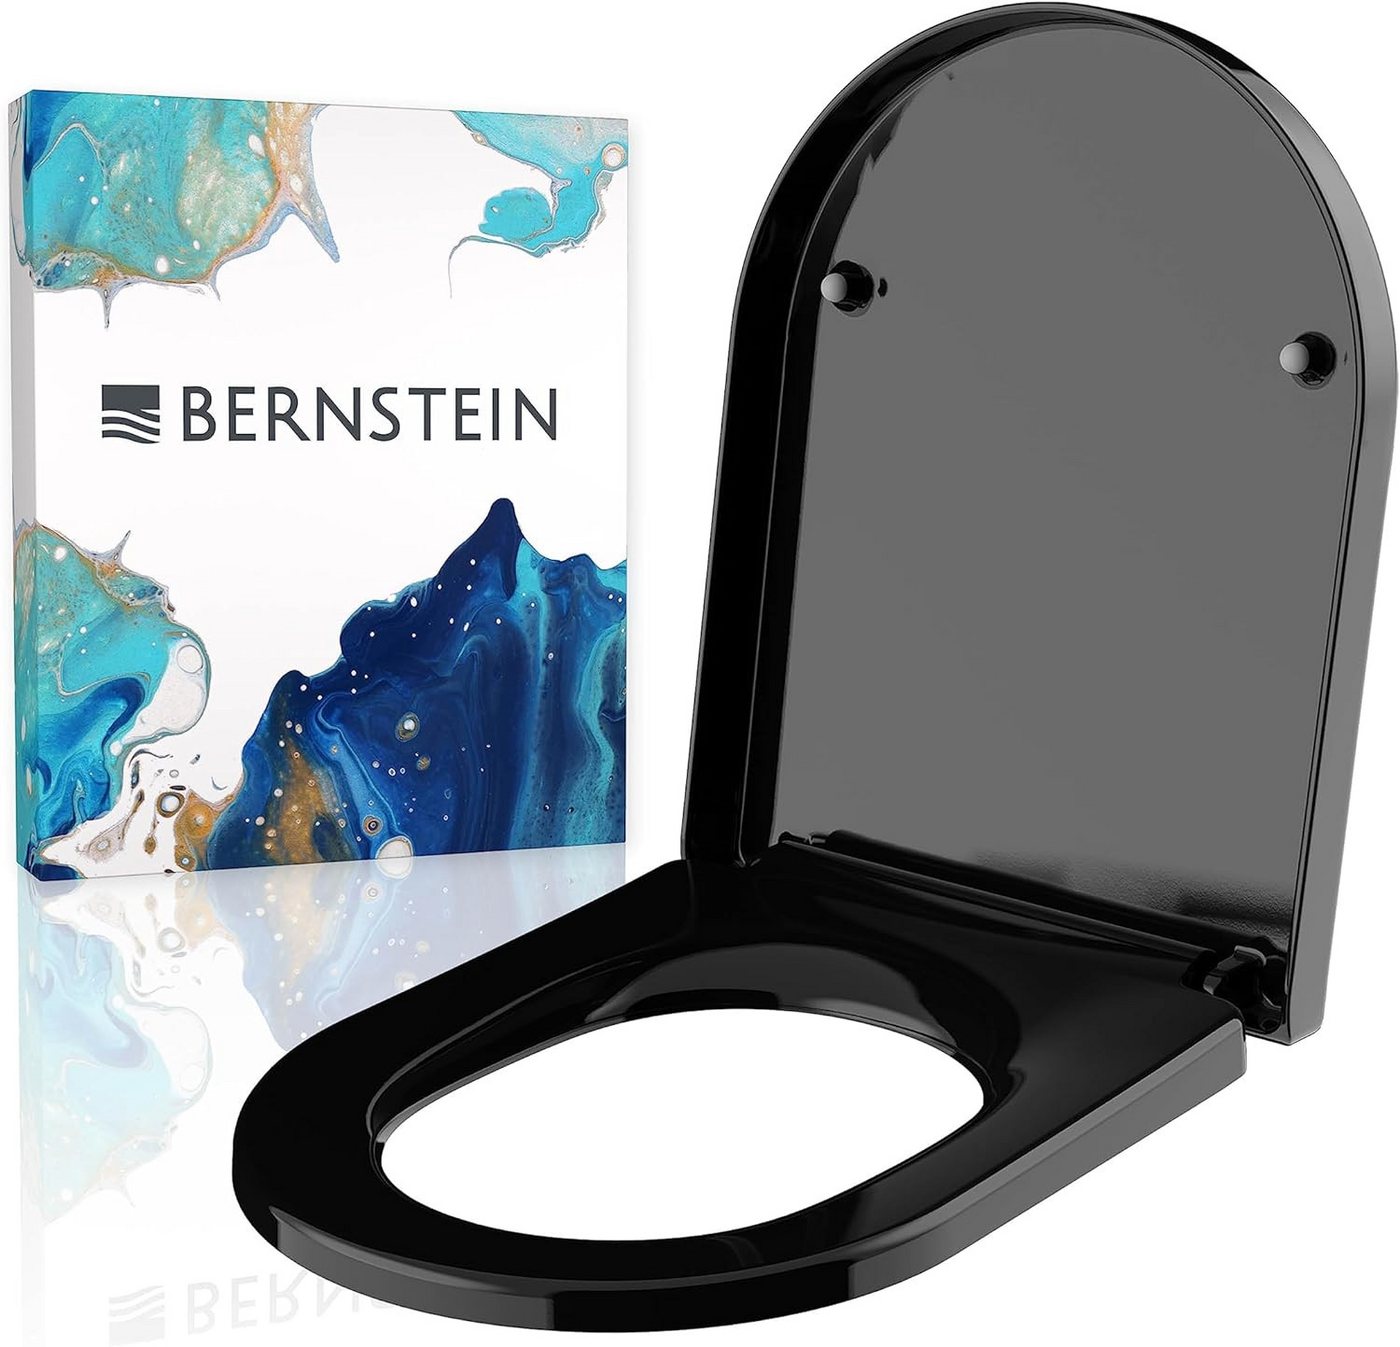 Bernstein WC-Sitz U1002 (Komplett-Set, inkl. Befestigungsmaterial), schwarz / D-Form / Absenkautomatik / aus Duroplast / abnehmbar von Bernstein